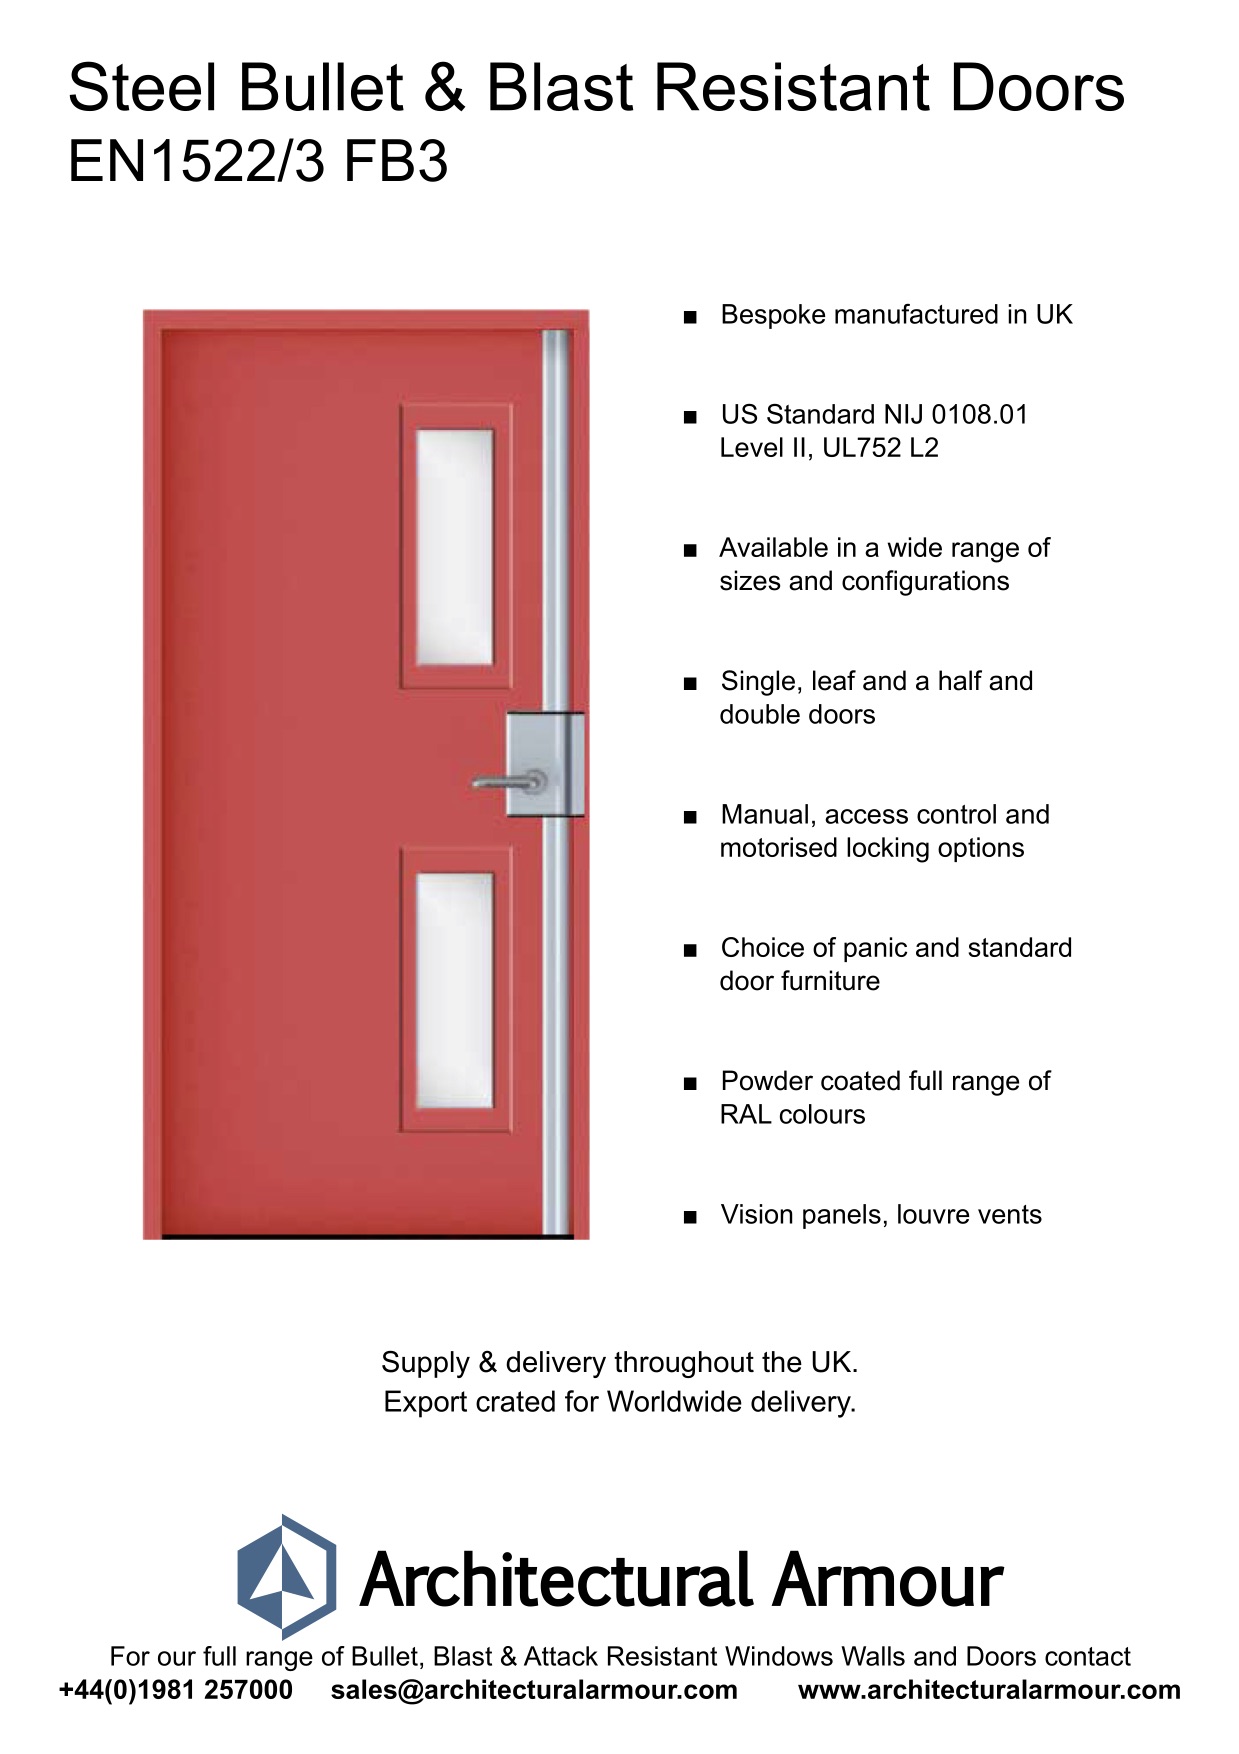 Blast-and-bulletproof-Steel-Door-Vision Panels-EN1522-3-FB3